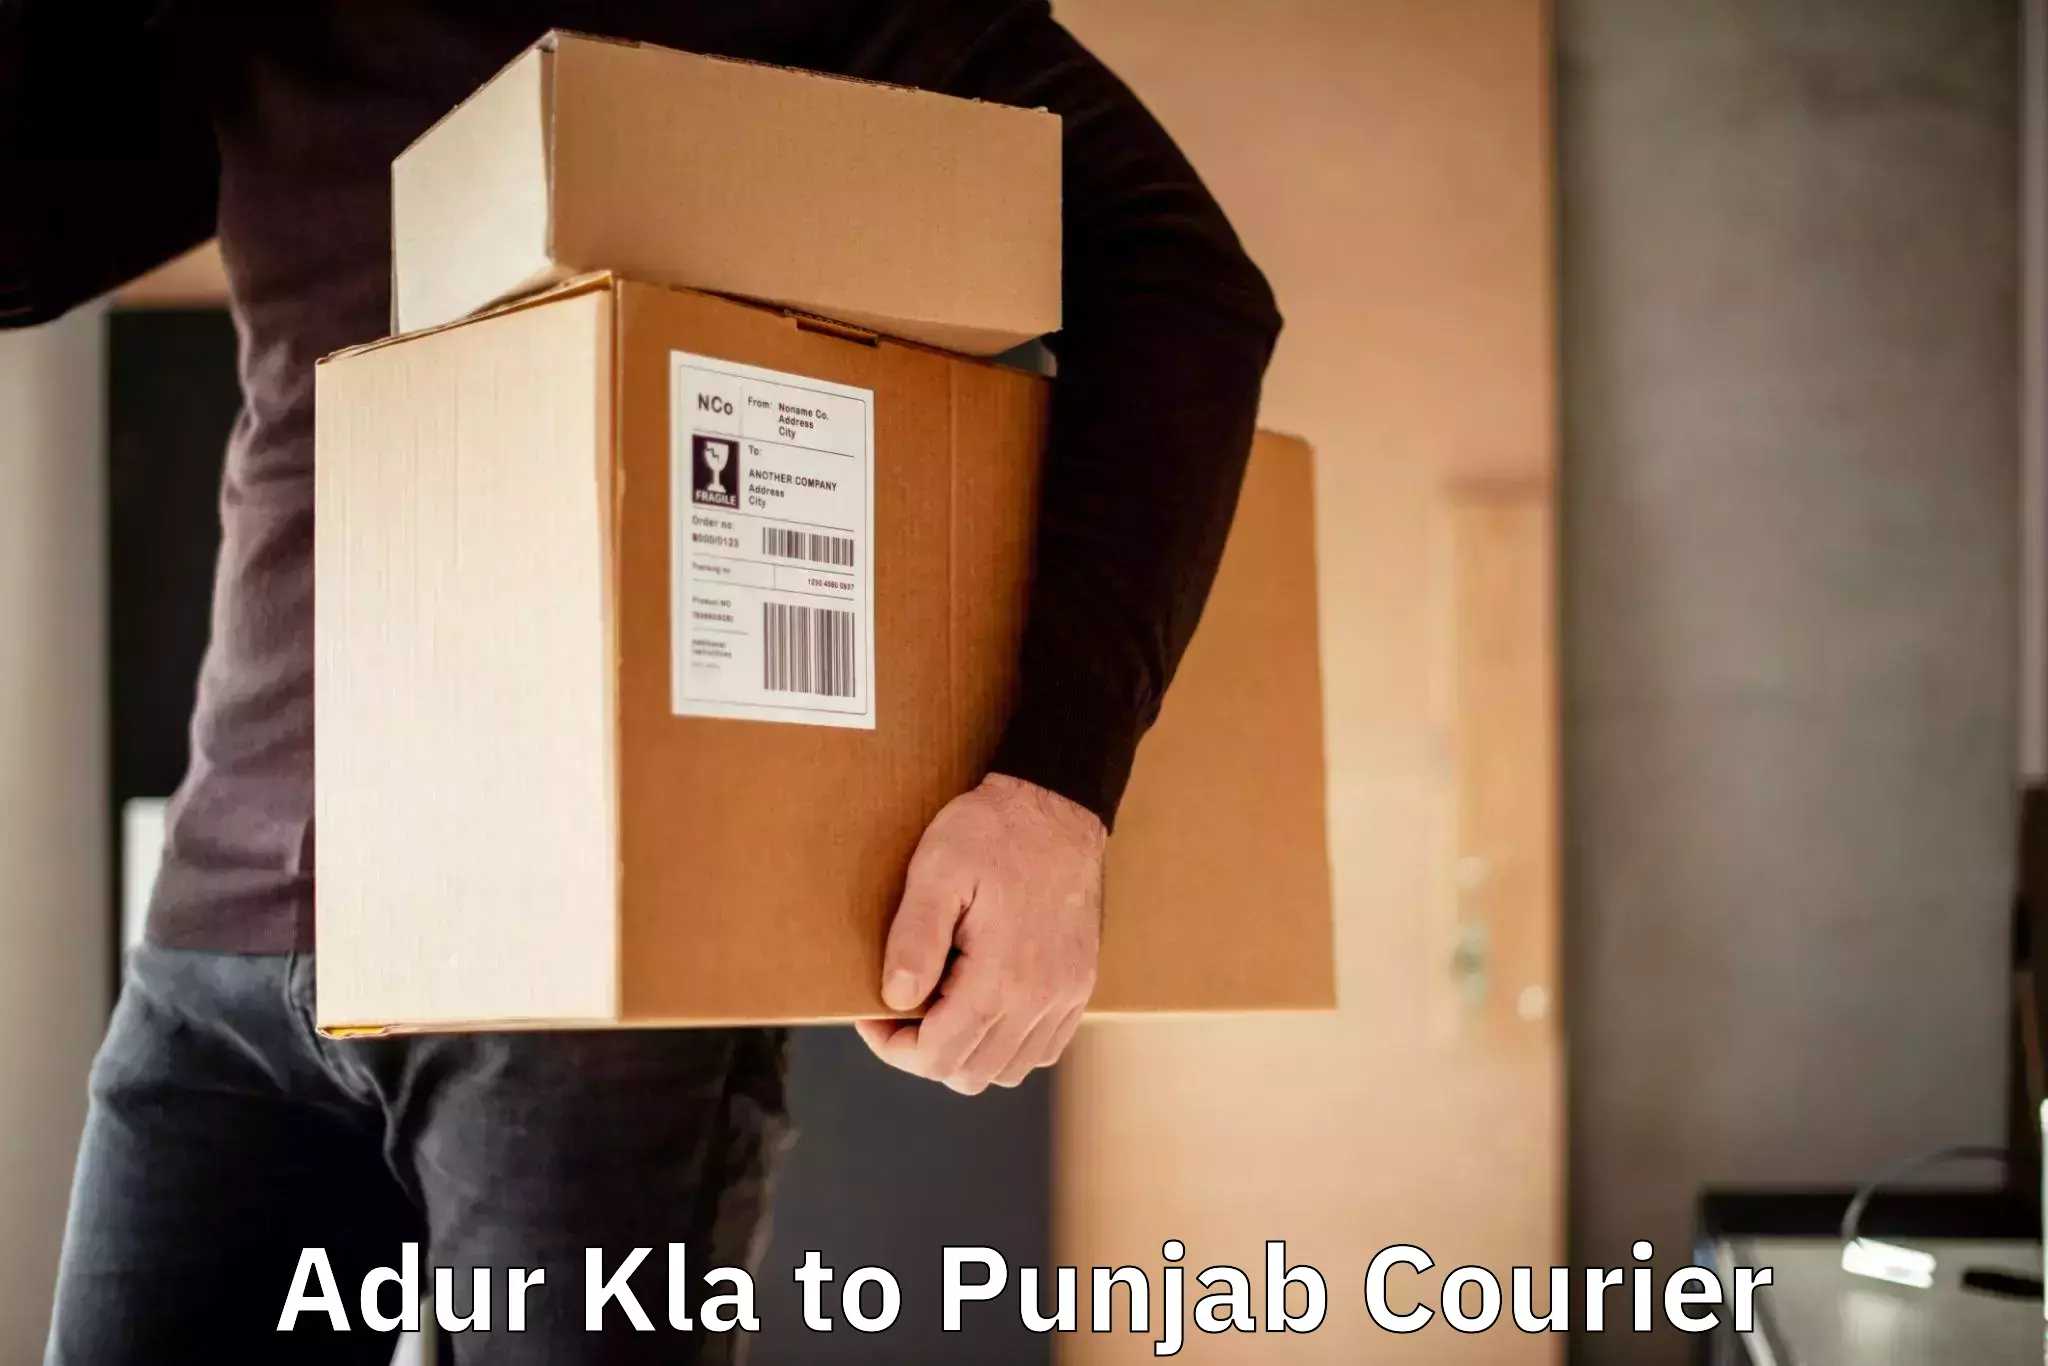 Efficient order fulfillment Adur Kla to Punjab